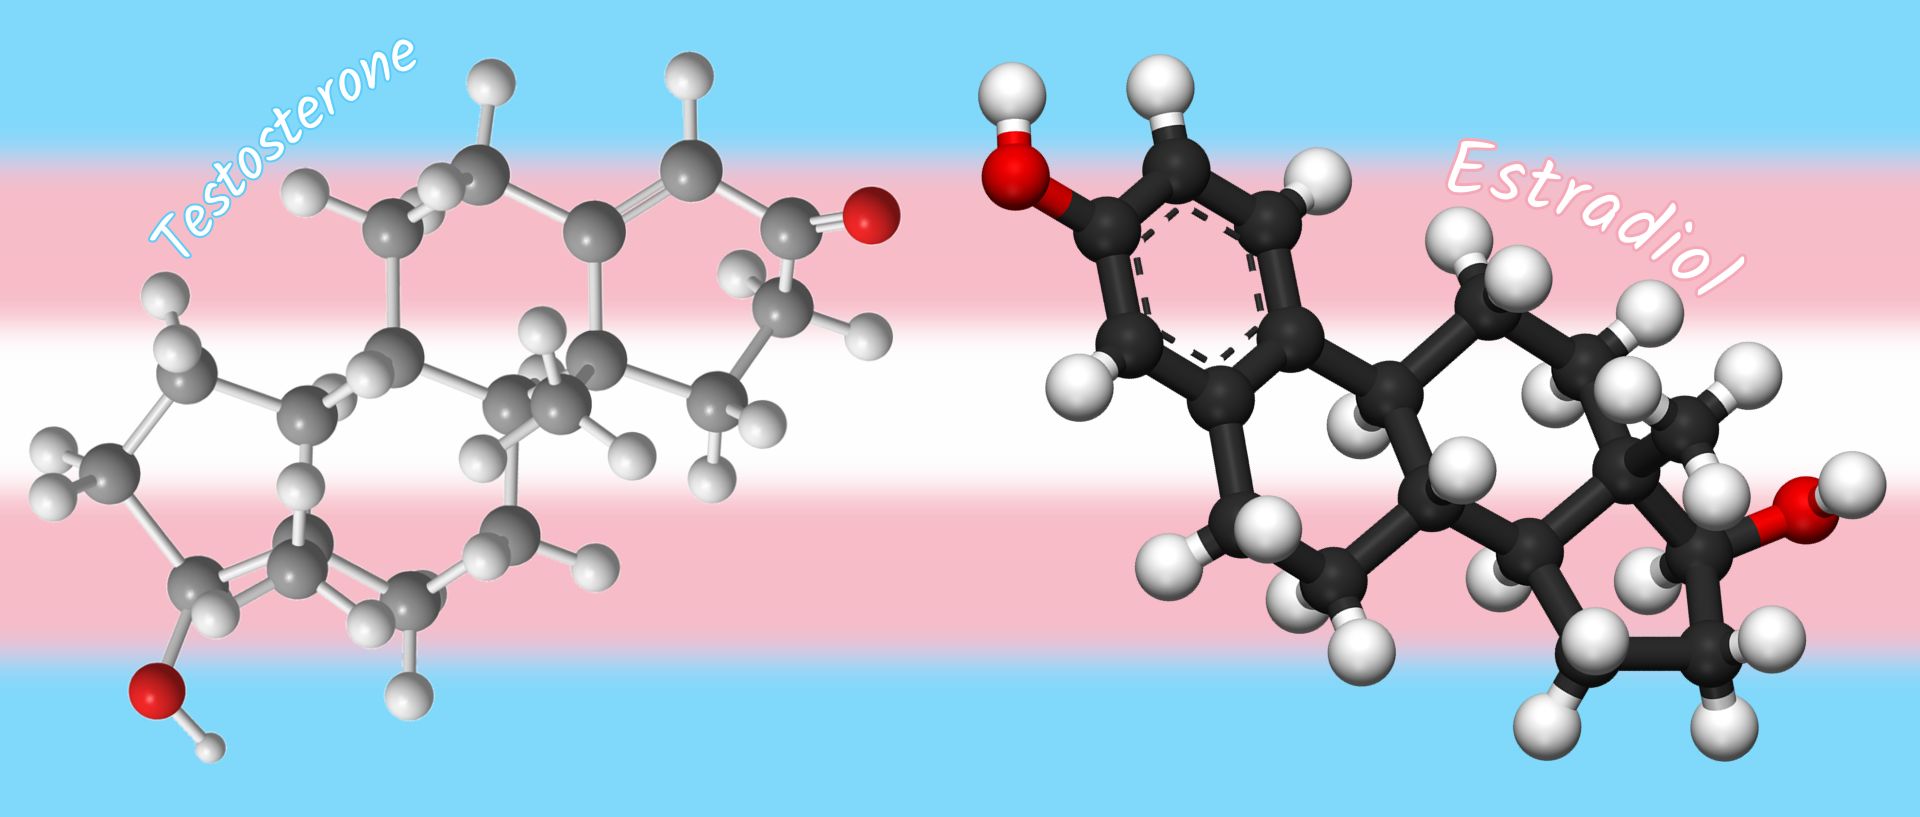 Hormones - Testosterone, Estradiol - 3D balls